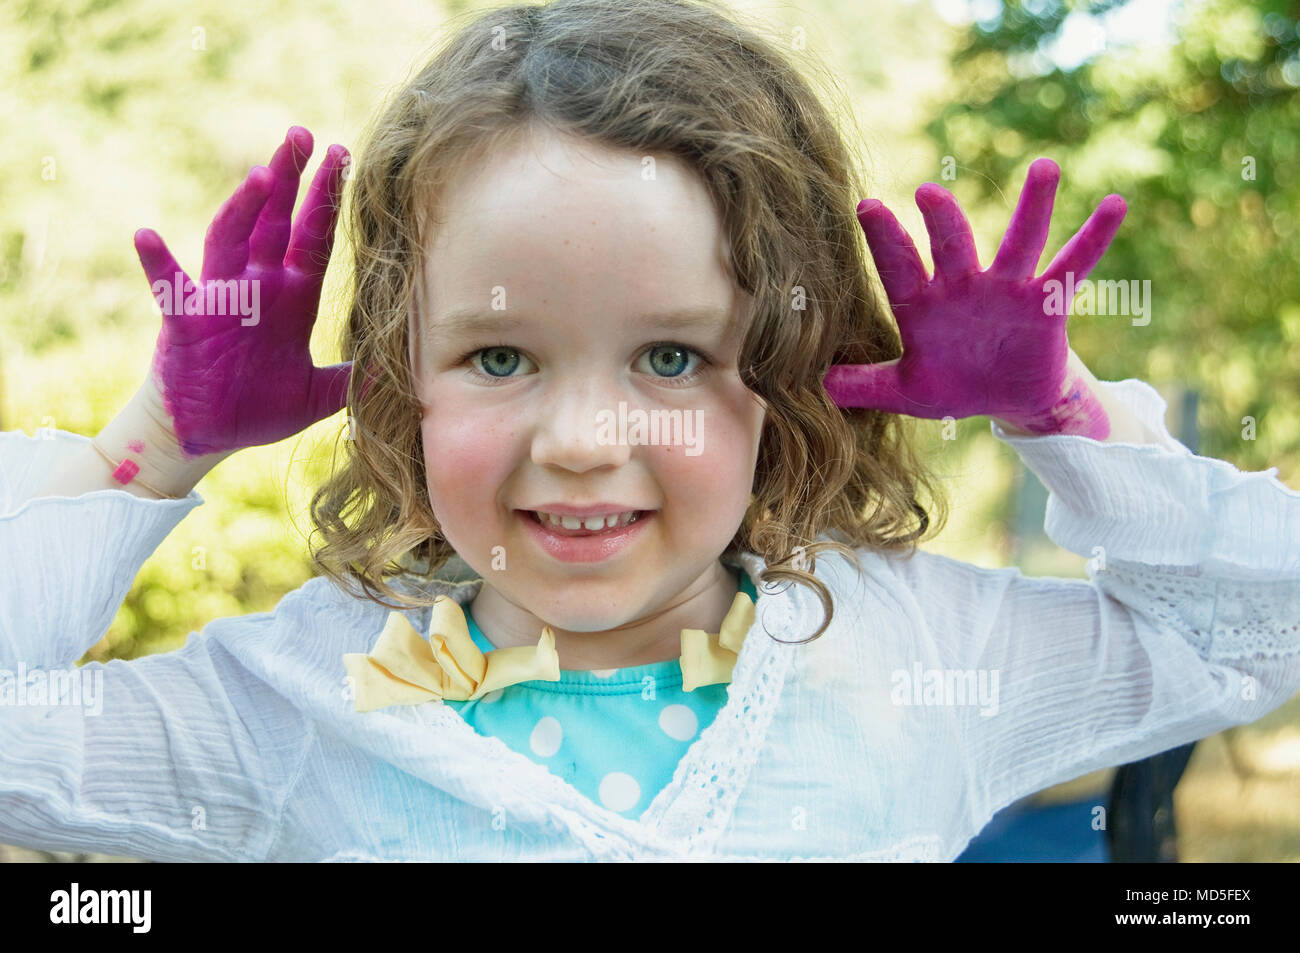 Una giovane ragazza (3-5 anni) con i capelli ricci e fingerpaint sulle mani. Foto Stock